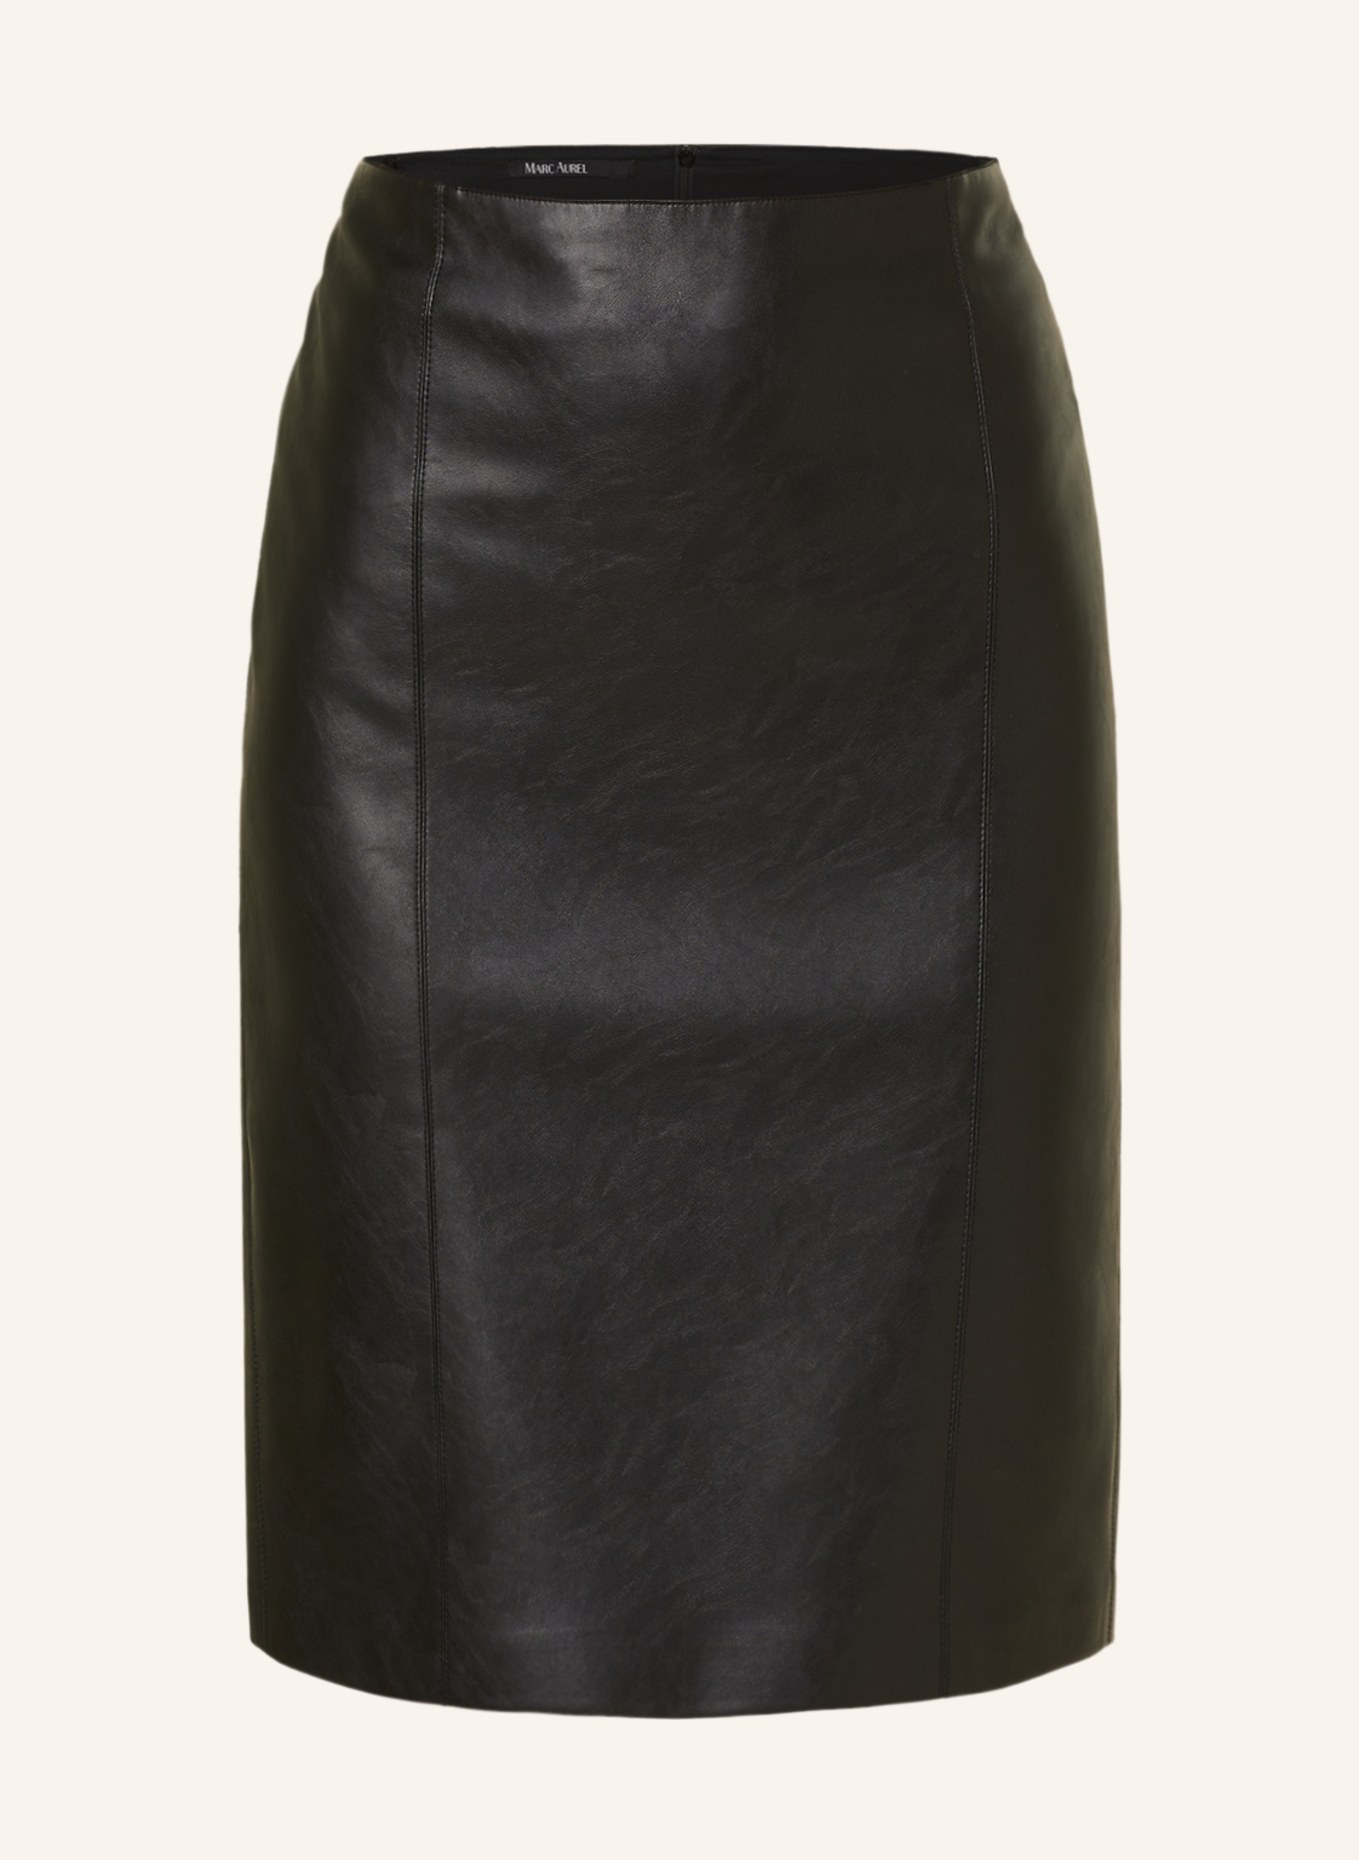 MARC AUREL Skirt in leather look, Color: BLACK (Image 1)